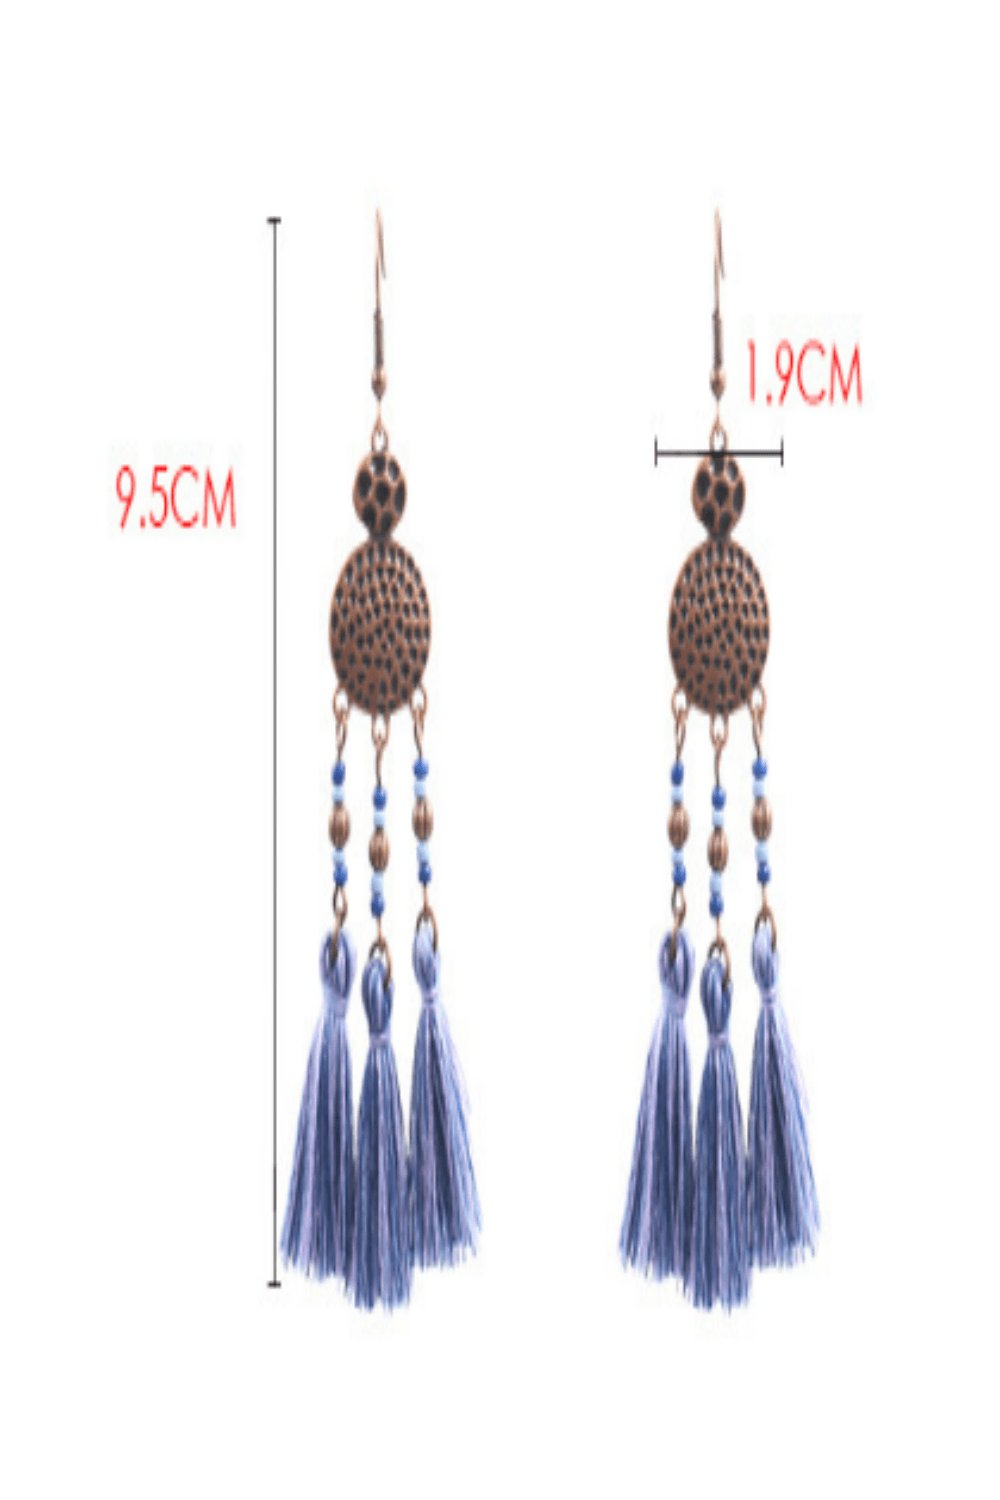 Woven Silk Geometric Fan Tassel Bohemian Earrings - TGC Boutique - Dangle Earrings